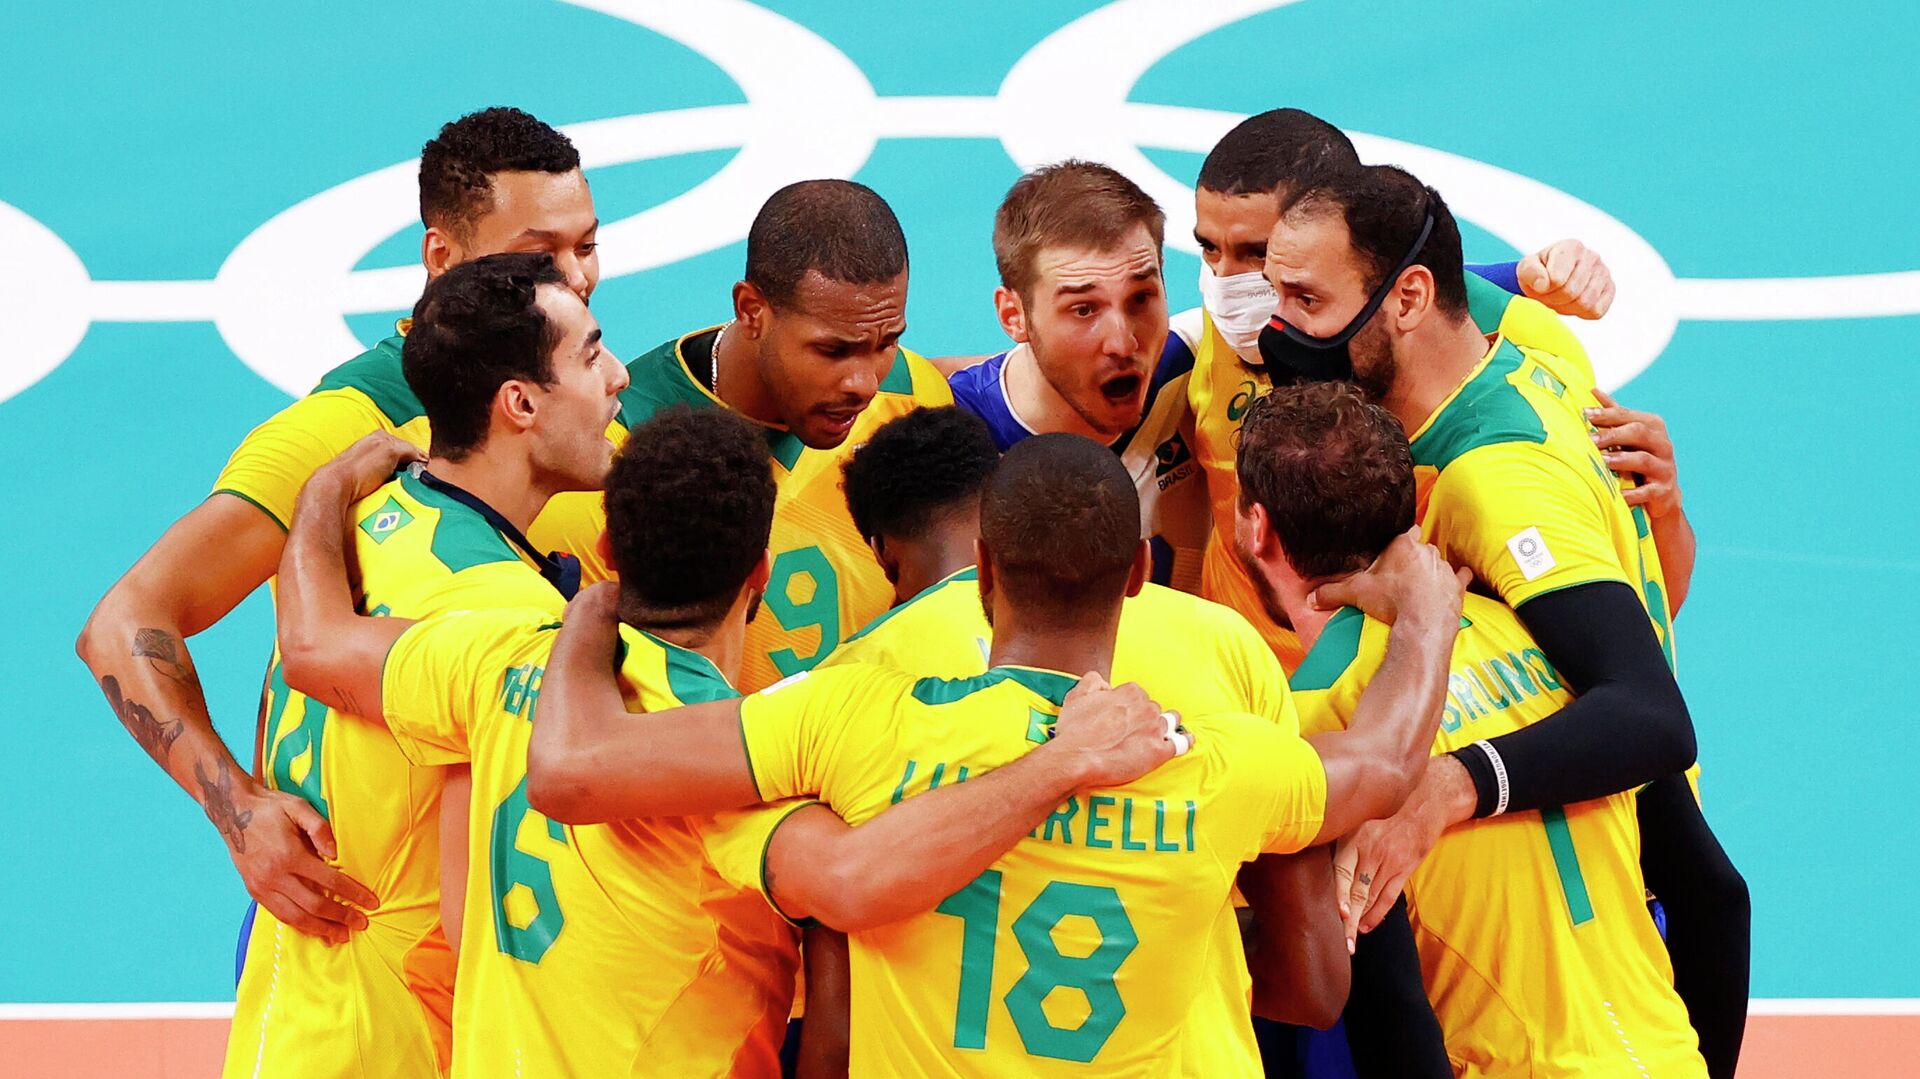 2012 волейбол мужчины россия бразилия финал